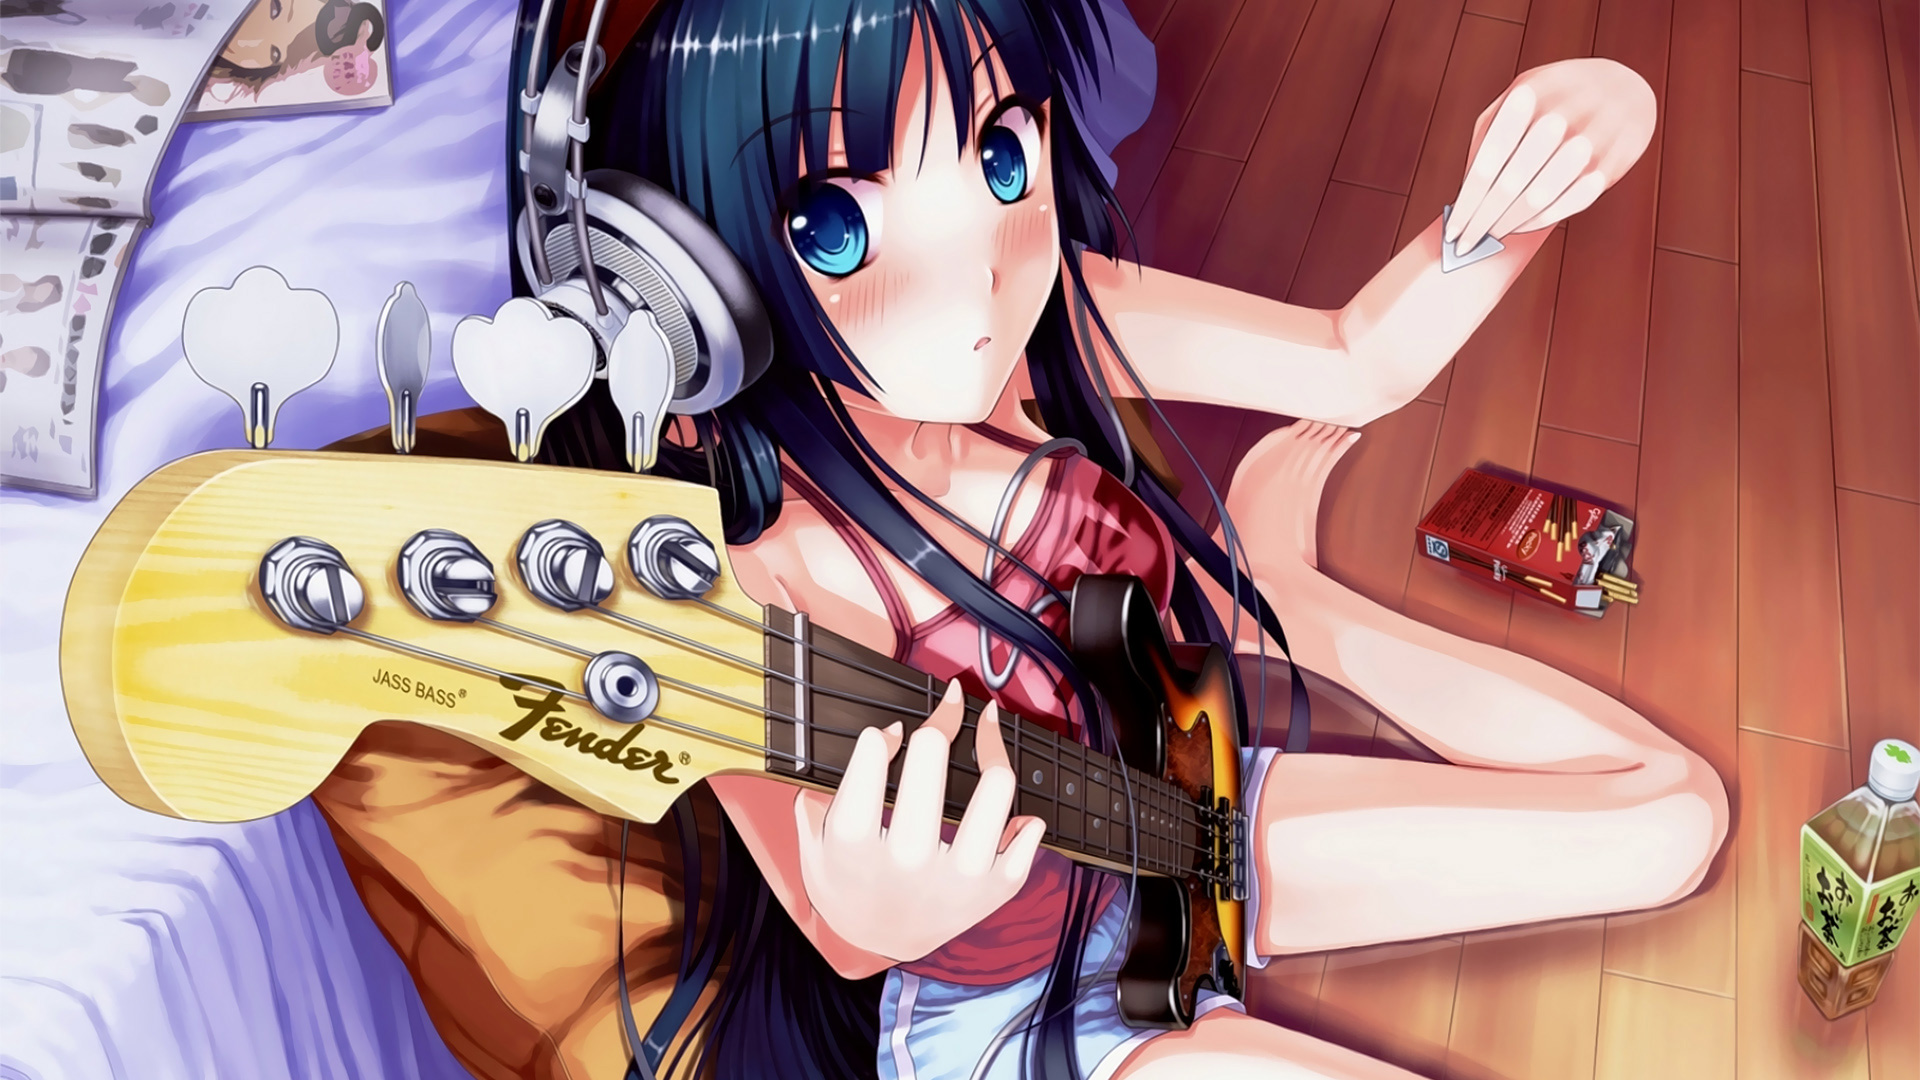 headphones, K-ON!, blue eyes, guitars, Akiyama Mio, shorts, anime girls, guitarists, guitar picks - desktop wallpaper